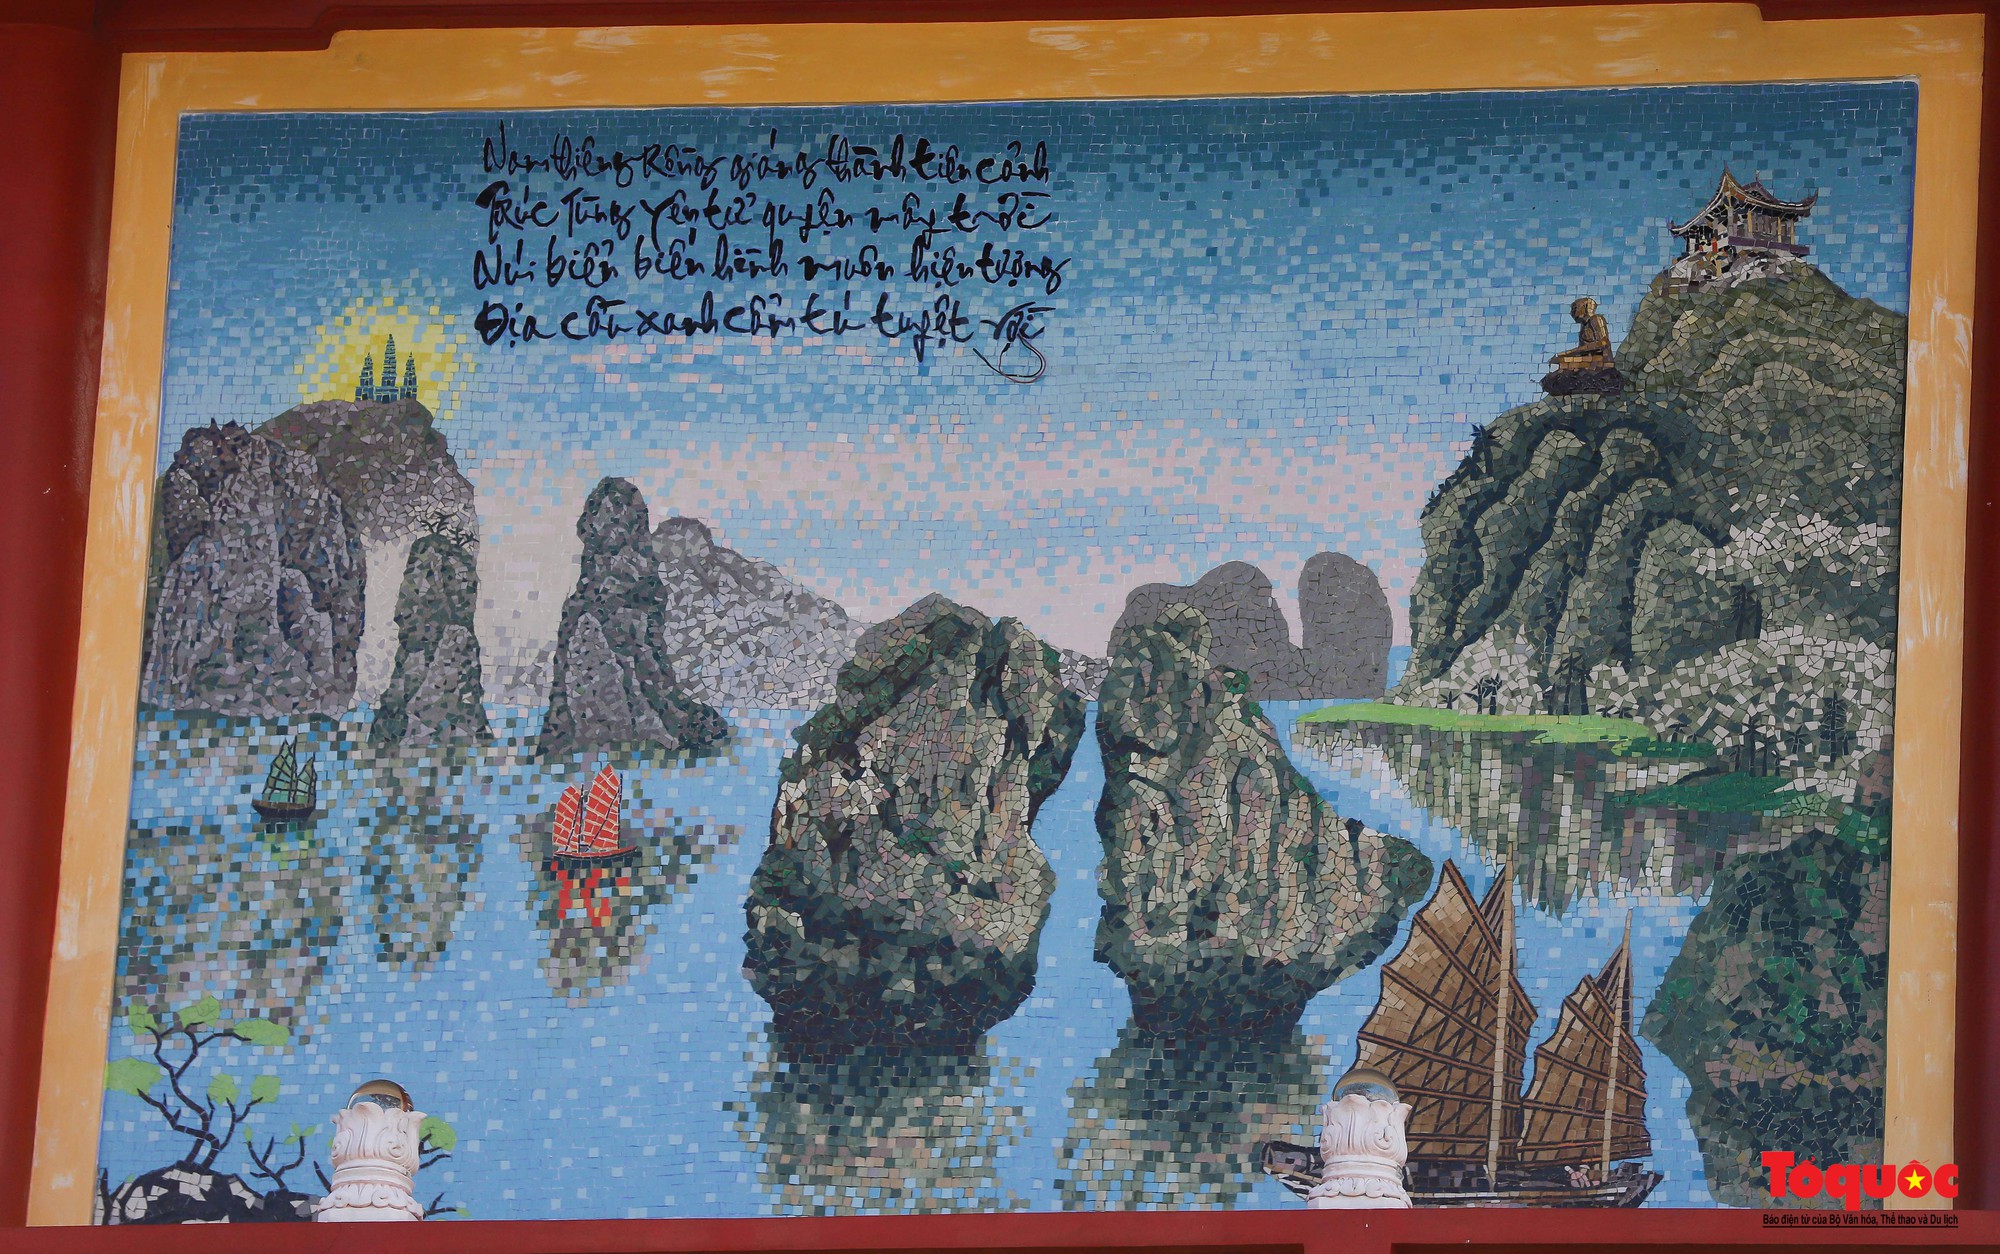 Cận cảnh 16 bức tranh sứ độc bản trên tường vừa được xác lập kỷ lục Việt Nam - Ảnh 15.